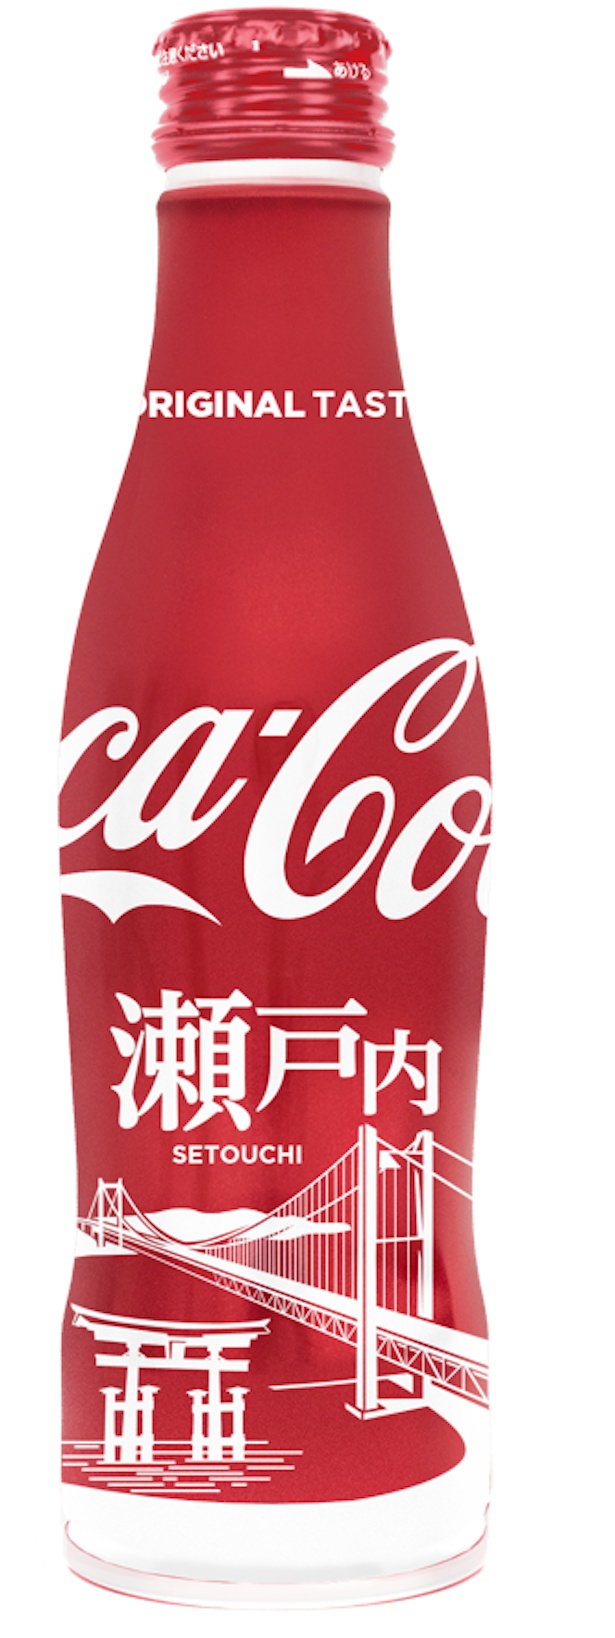 画像2 5 コカ コーラに地域デザイン登場 地域限定ボトル発売 ウォーカープラス